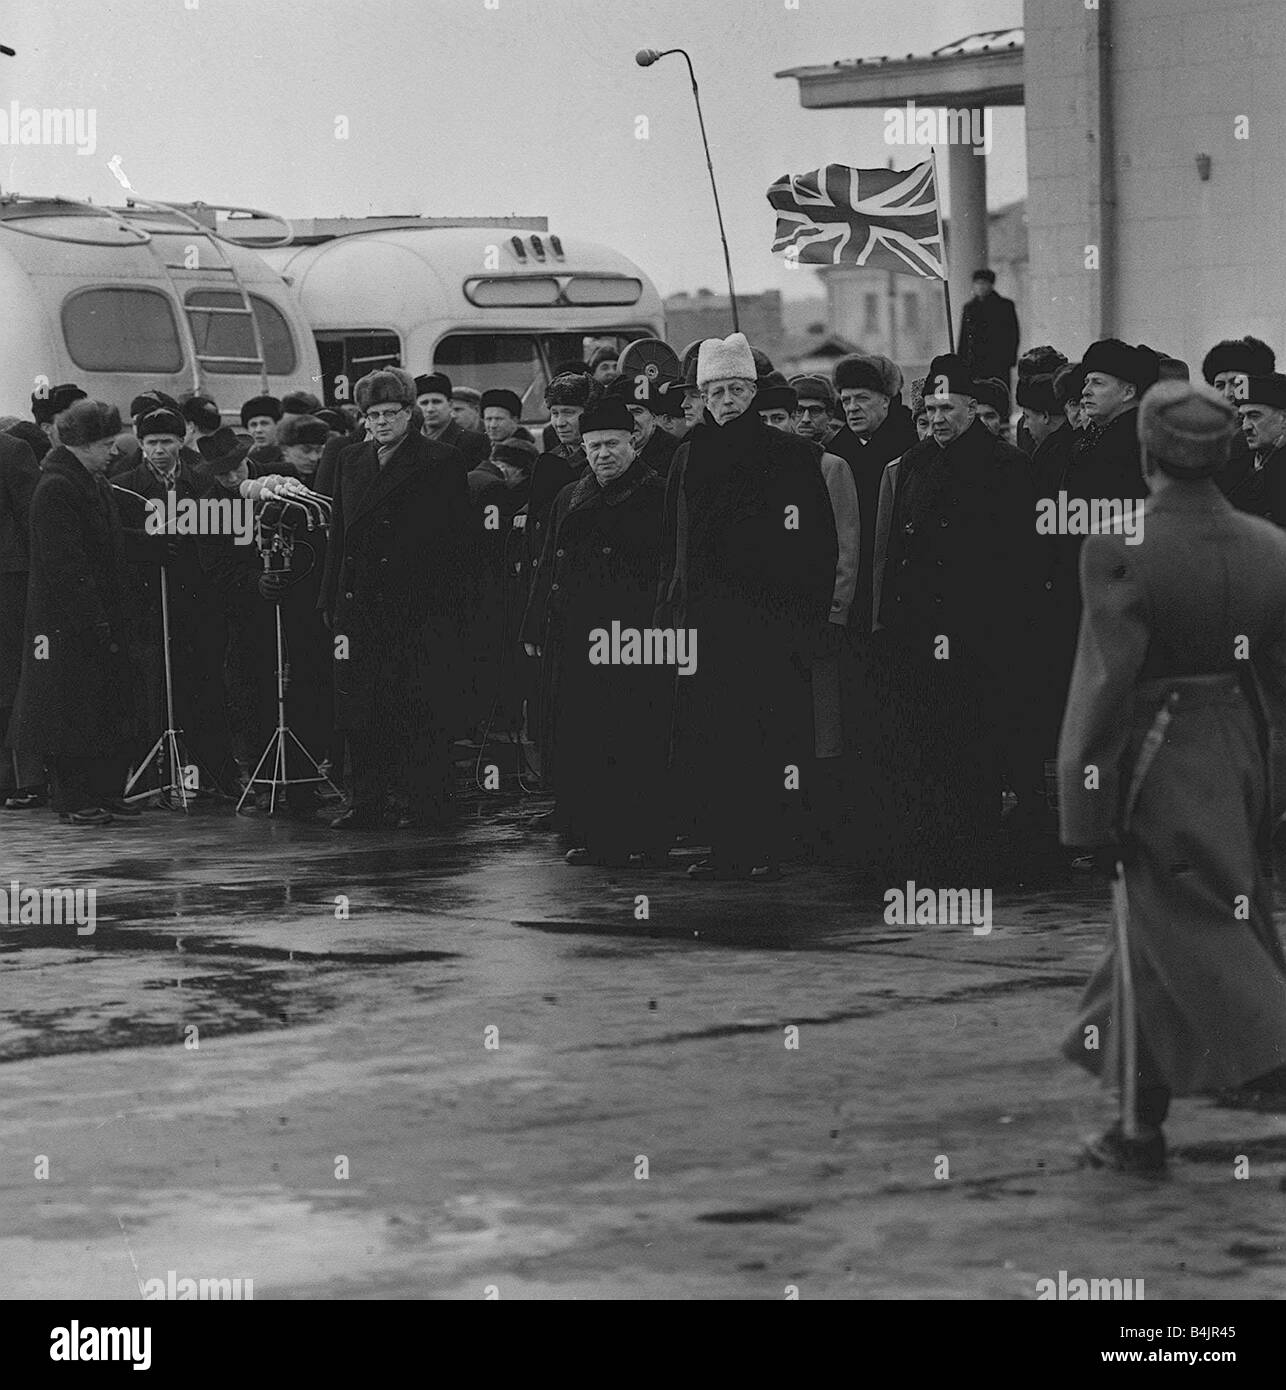 Macmillan kommt in Moskau passend gekleidet für die kalten russischen Klima, die, das der Premierminister Harold Macmillan im Bild nur nach einem Treffen mit dem sowjetischen Ministerpräsidenten Nikita Khrushchev 1959 Stockfoto